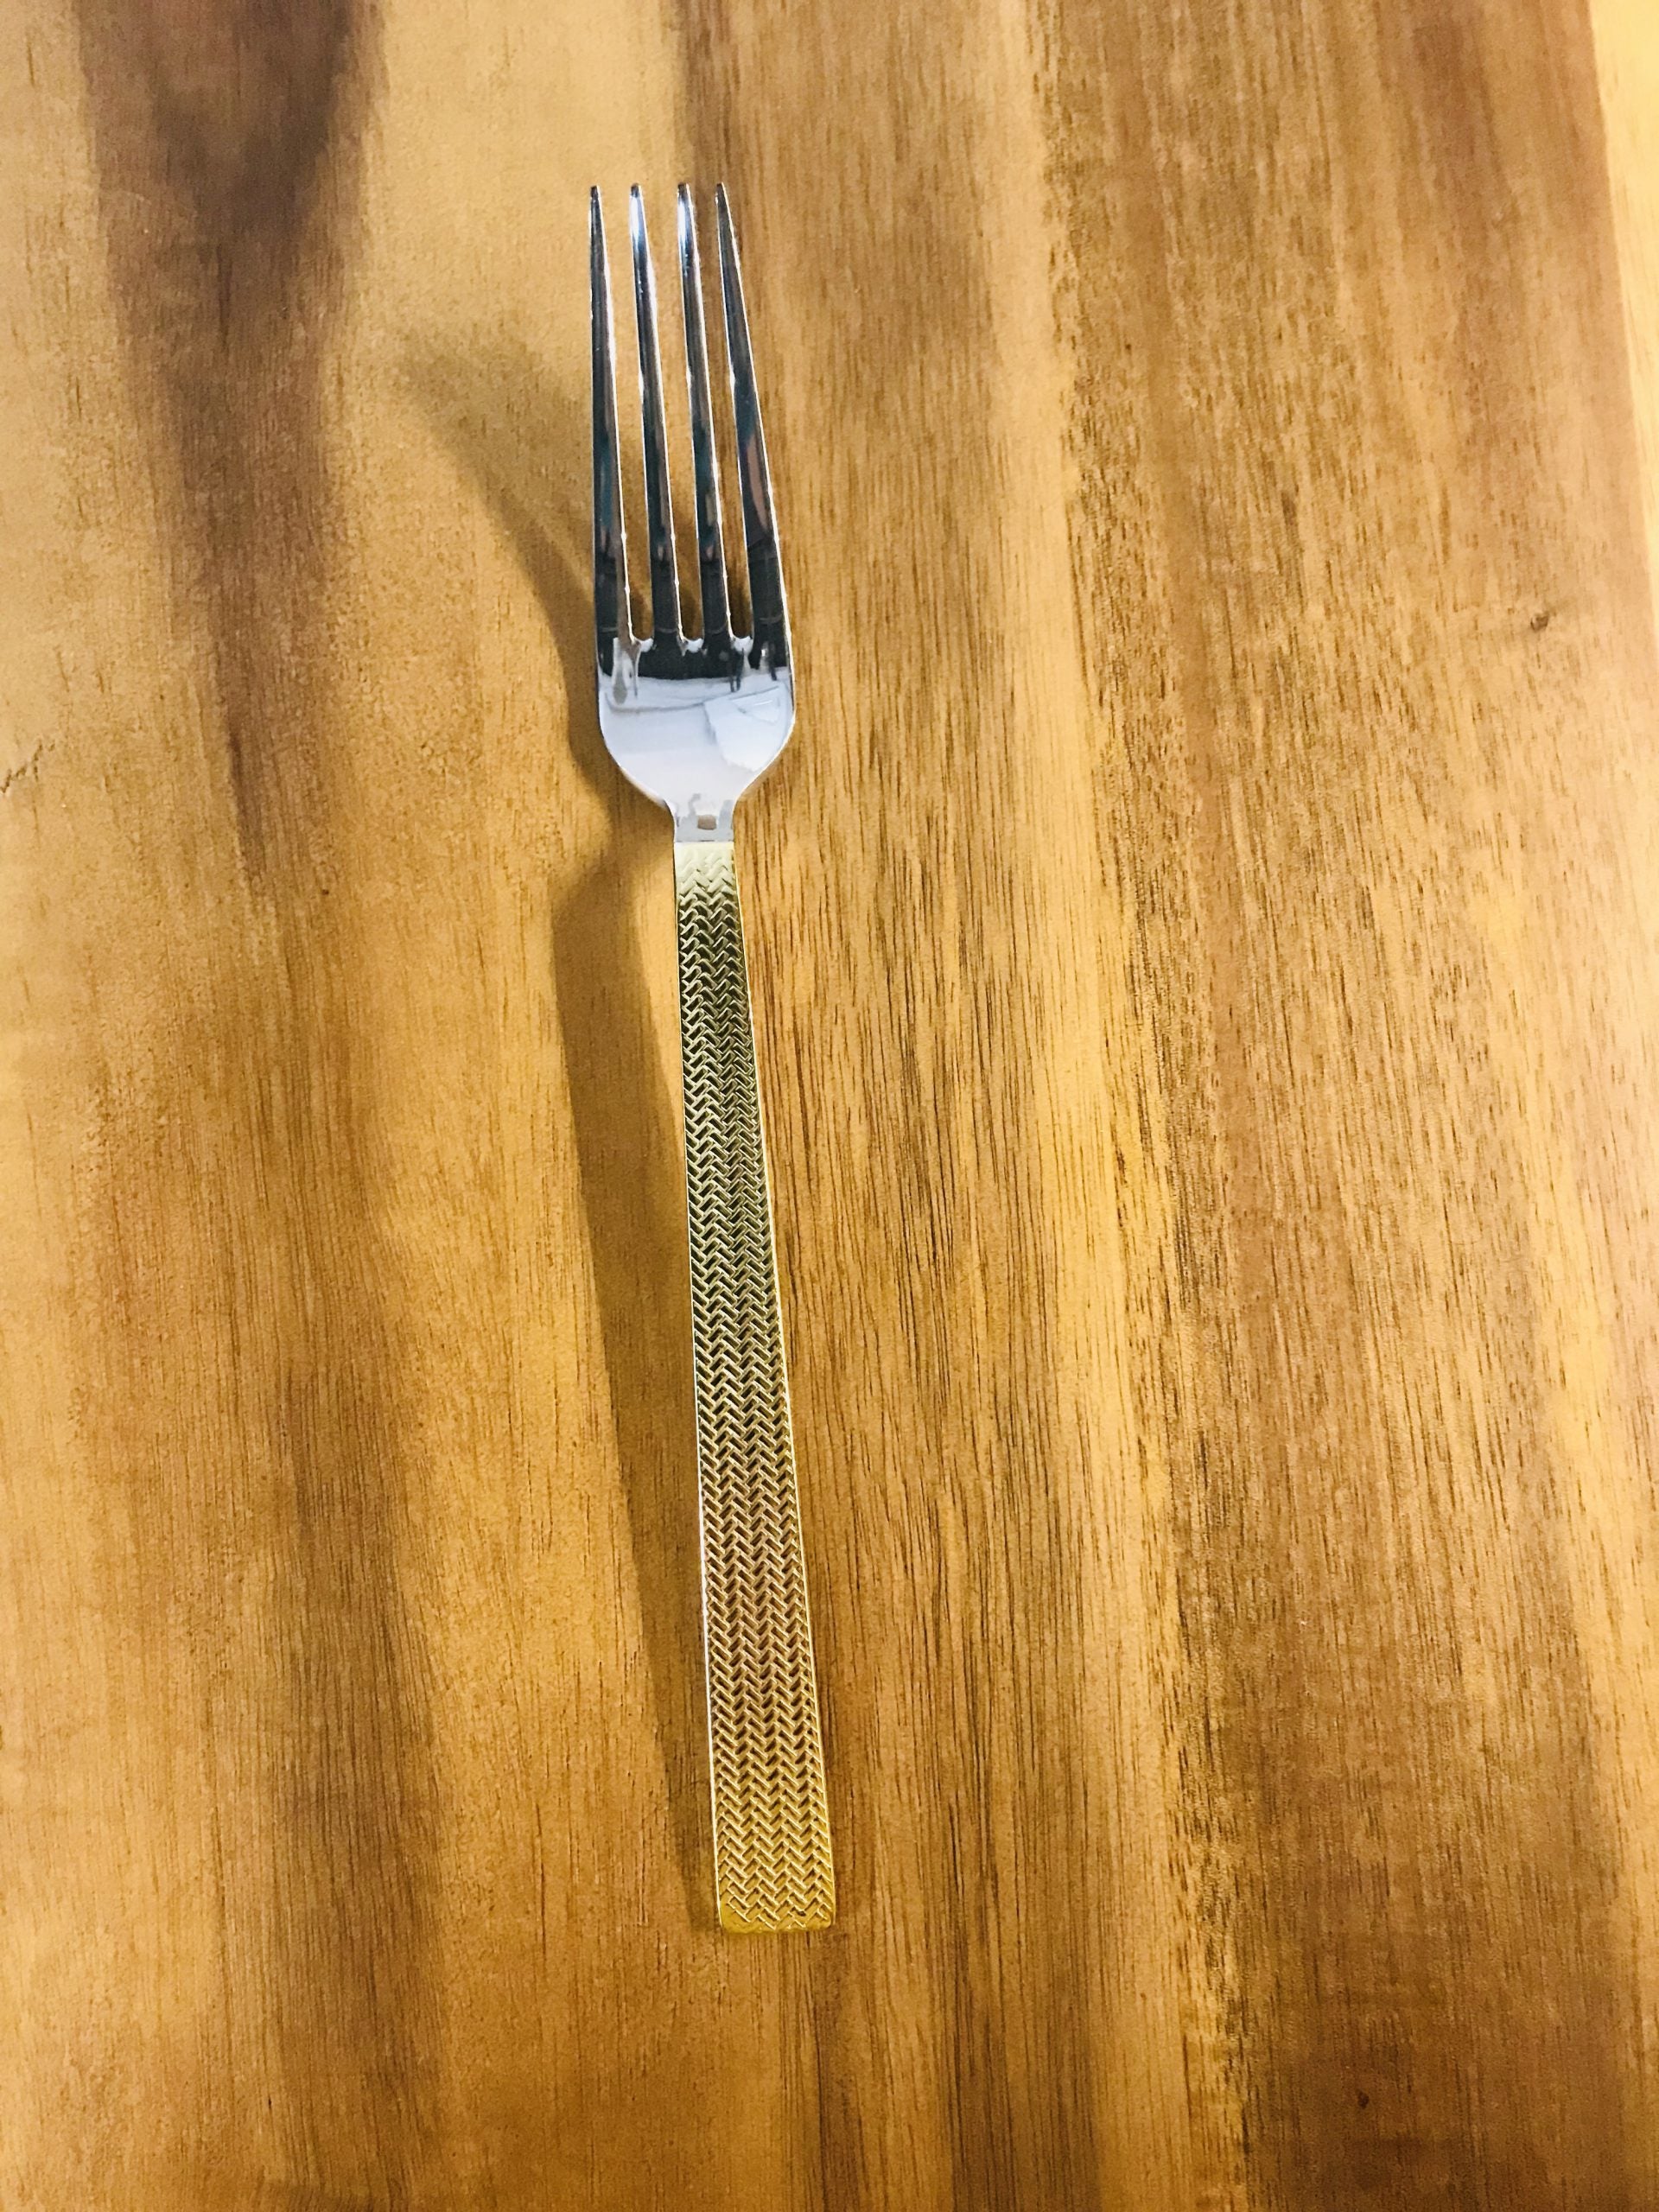 Gold handle salad/dessert fork